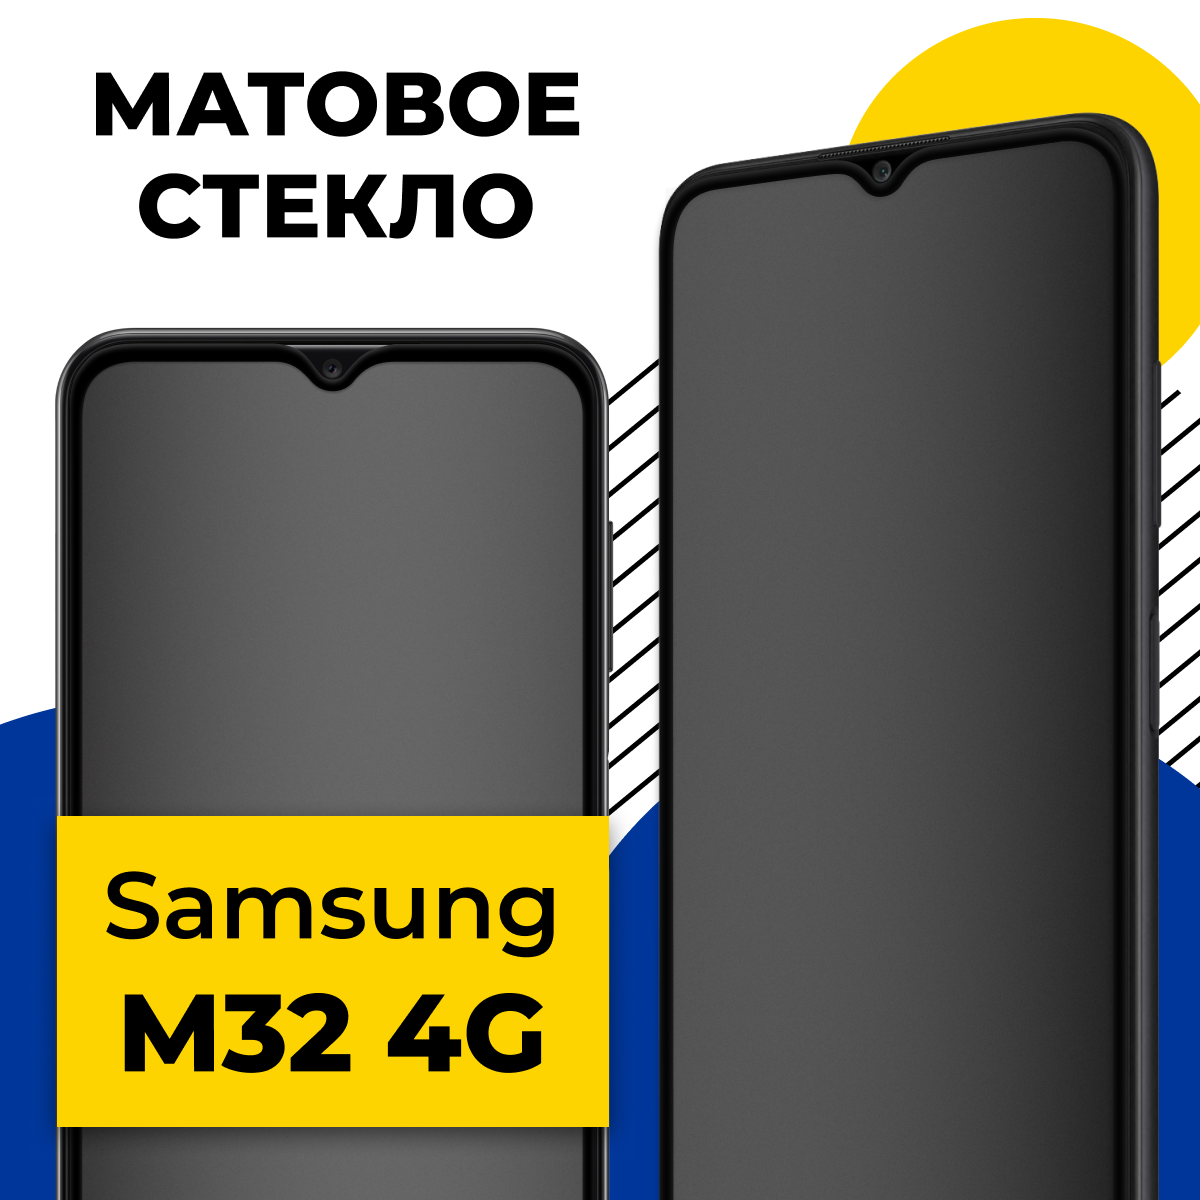 Матовое защитное стекло на телефон Samsung Galaxy M32 4G / Противоударное стекло 2.5D на смартфон Самсунг Галакси М32 4Г с олеофобным покрытием